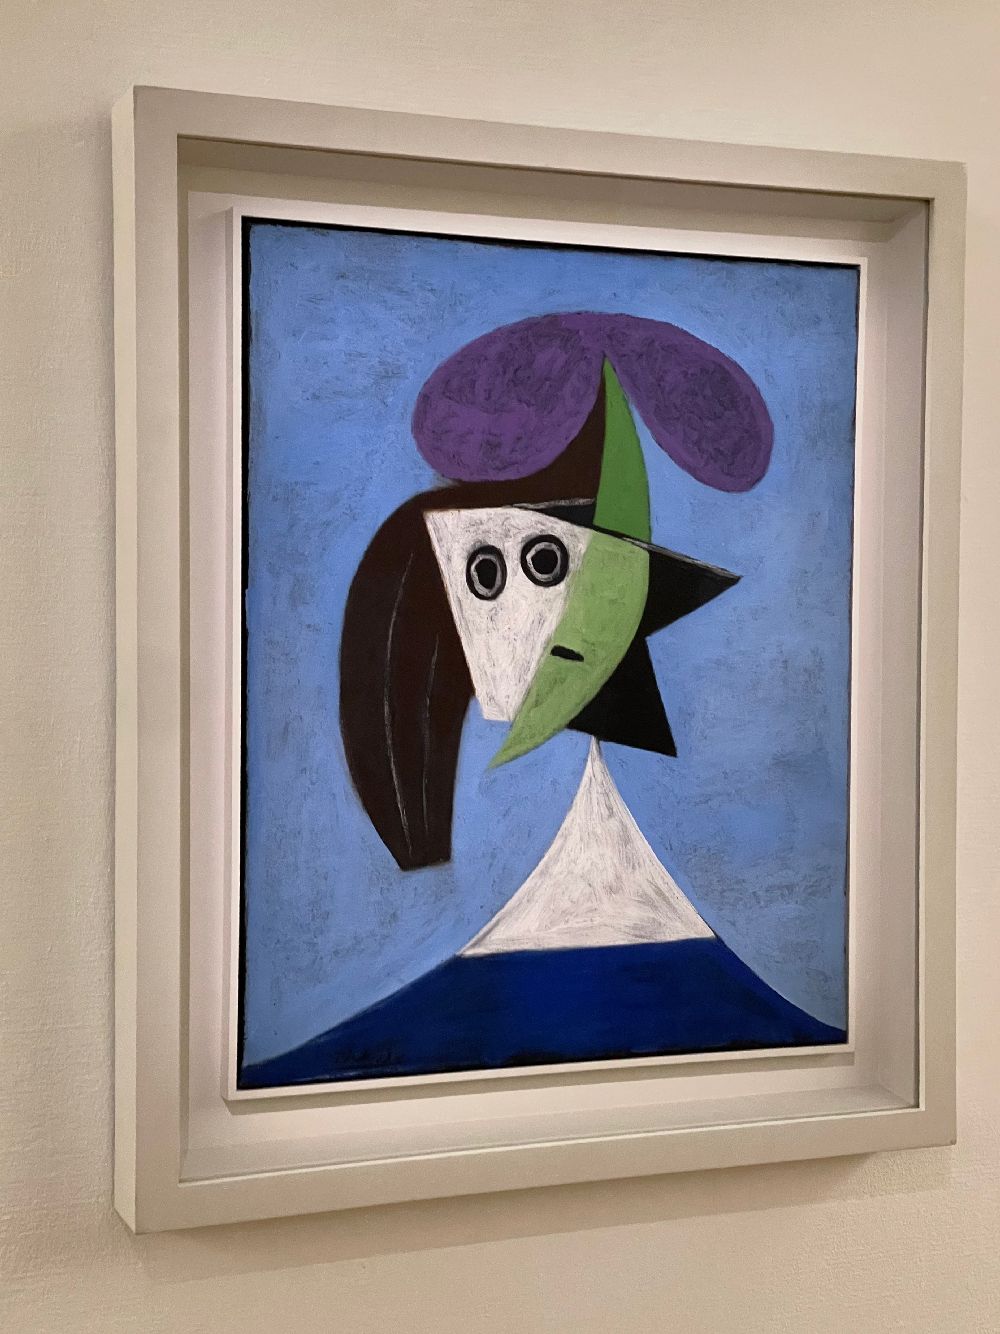 Pablo Picasso, Femme au Chapeau, 1935 - Centre Pompidou Paris